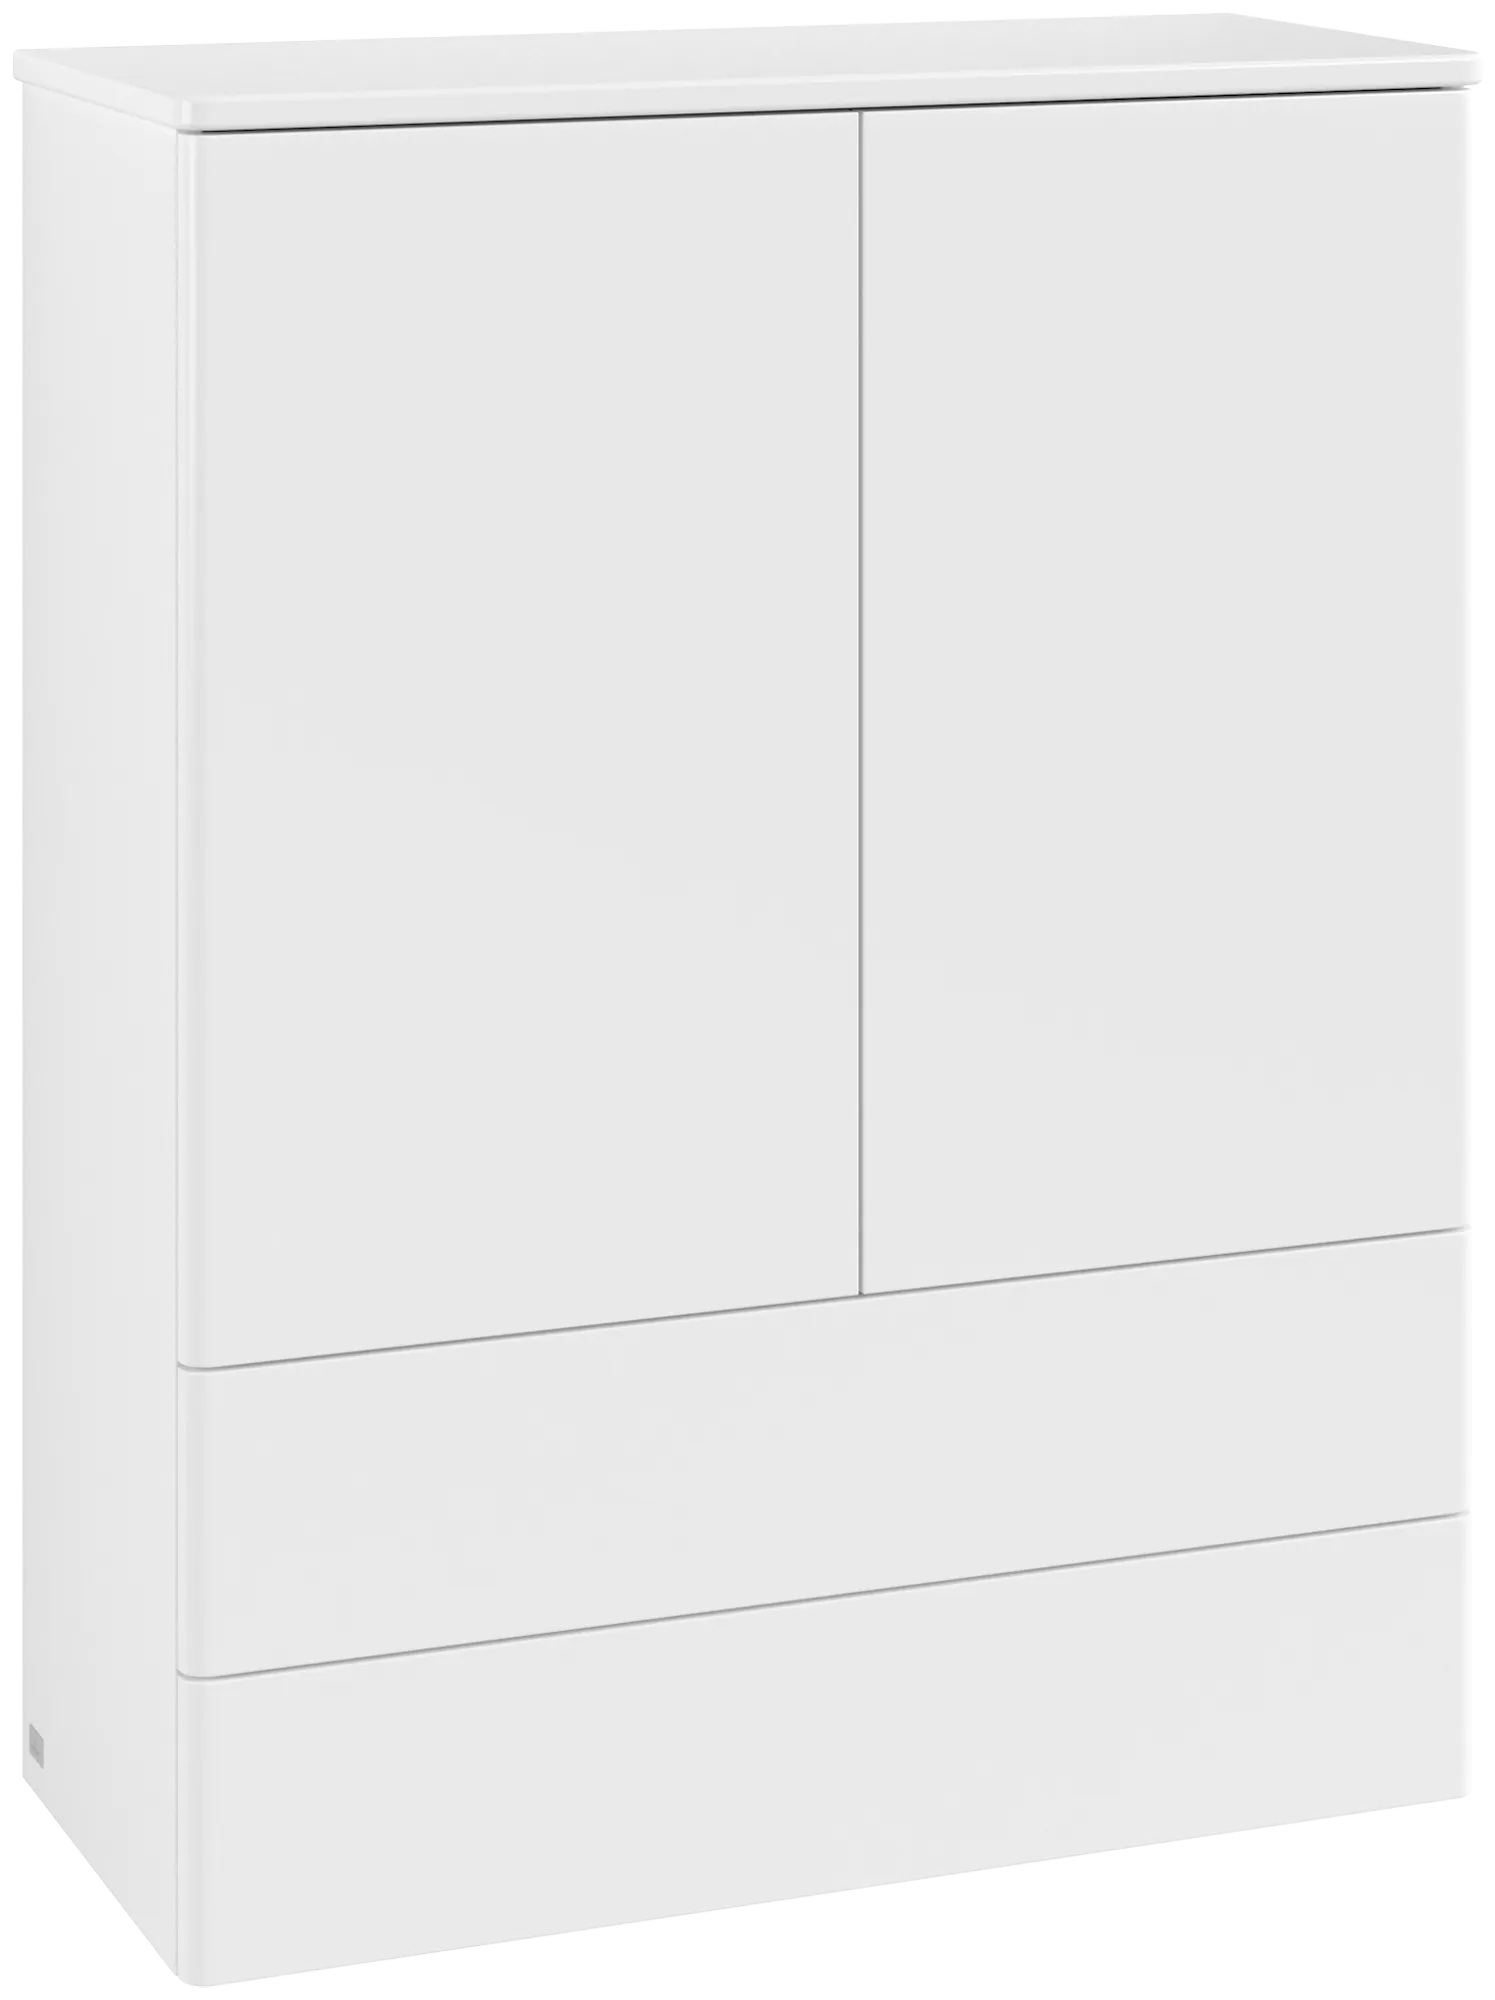 Bild von VILLEROY BOCH Antao Highboard, mit Beleuchtung, 2 Türen, 814 x 1039 x 356 mm, Front ohne Struktur, White Matt Lacquer / White Matt Lacquer #L47000MT